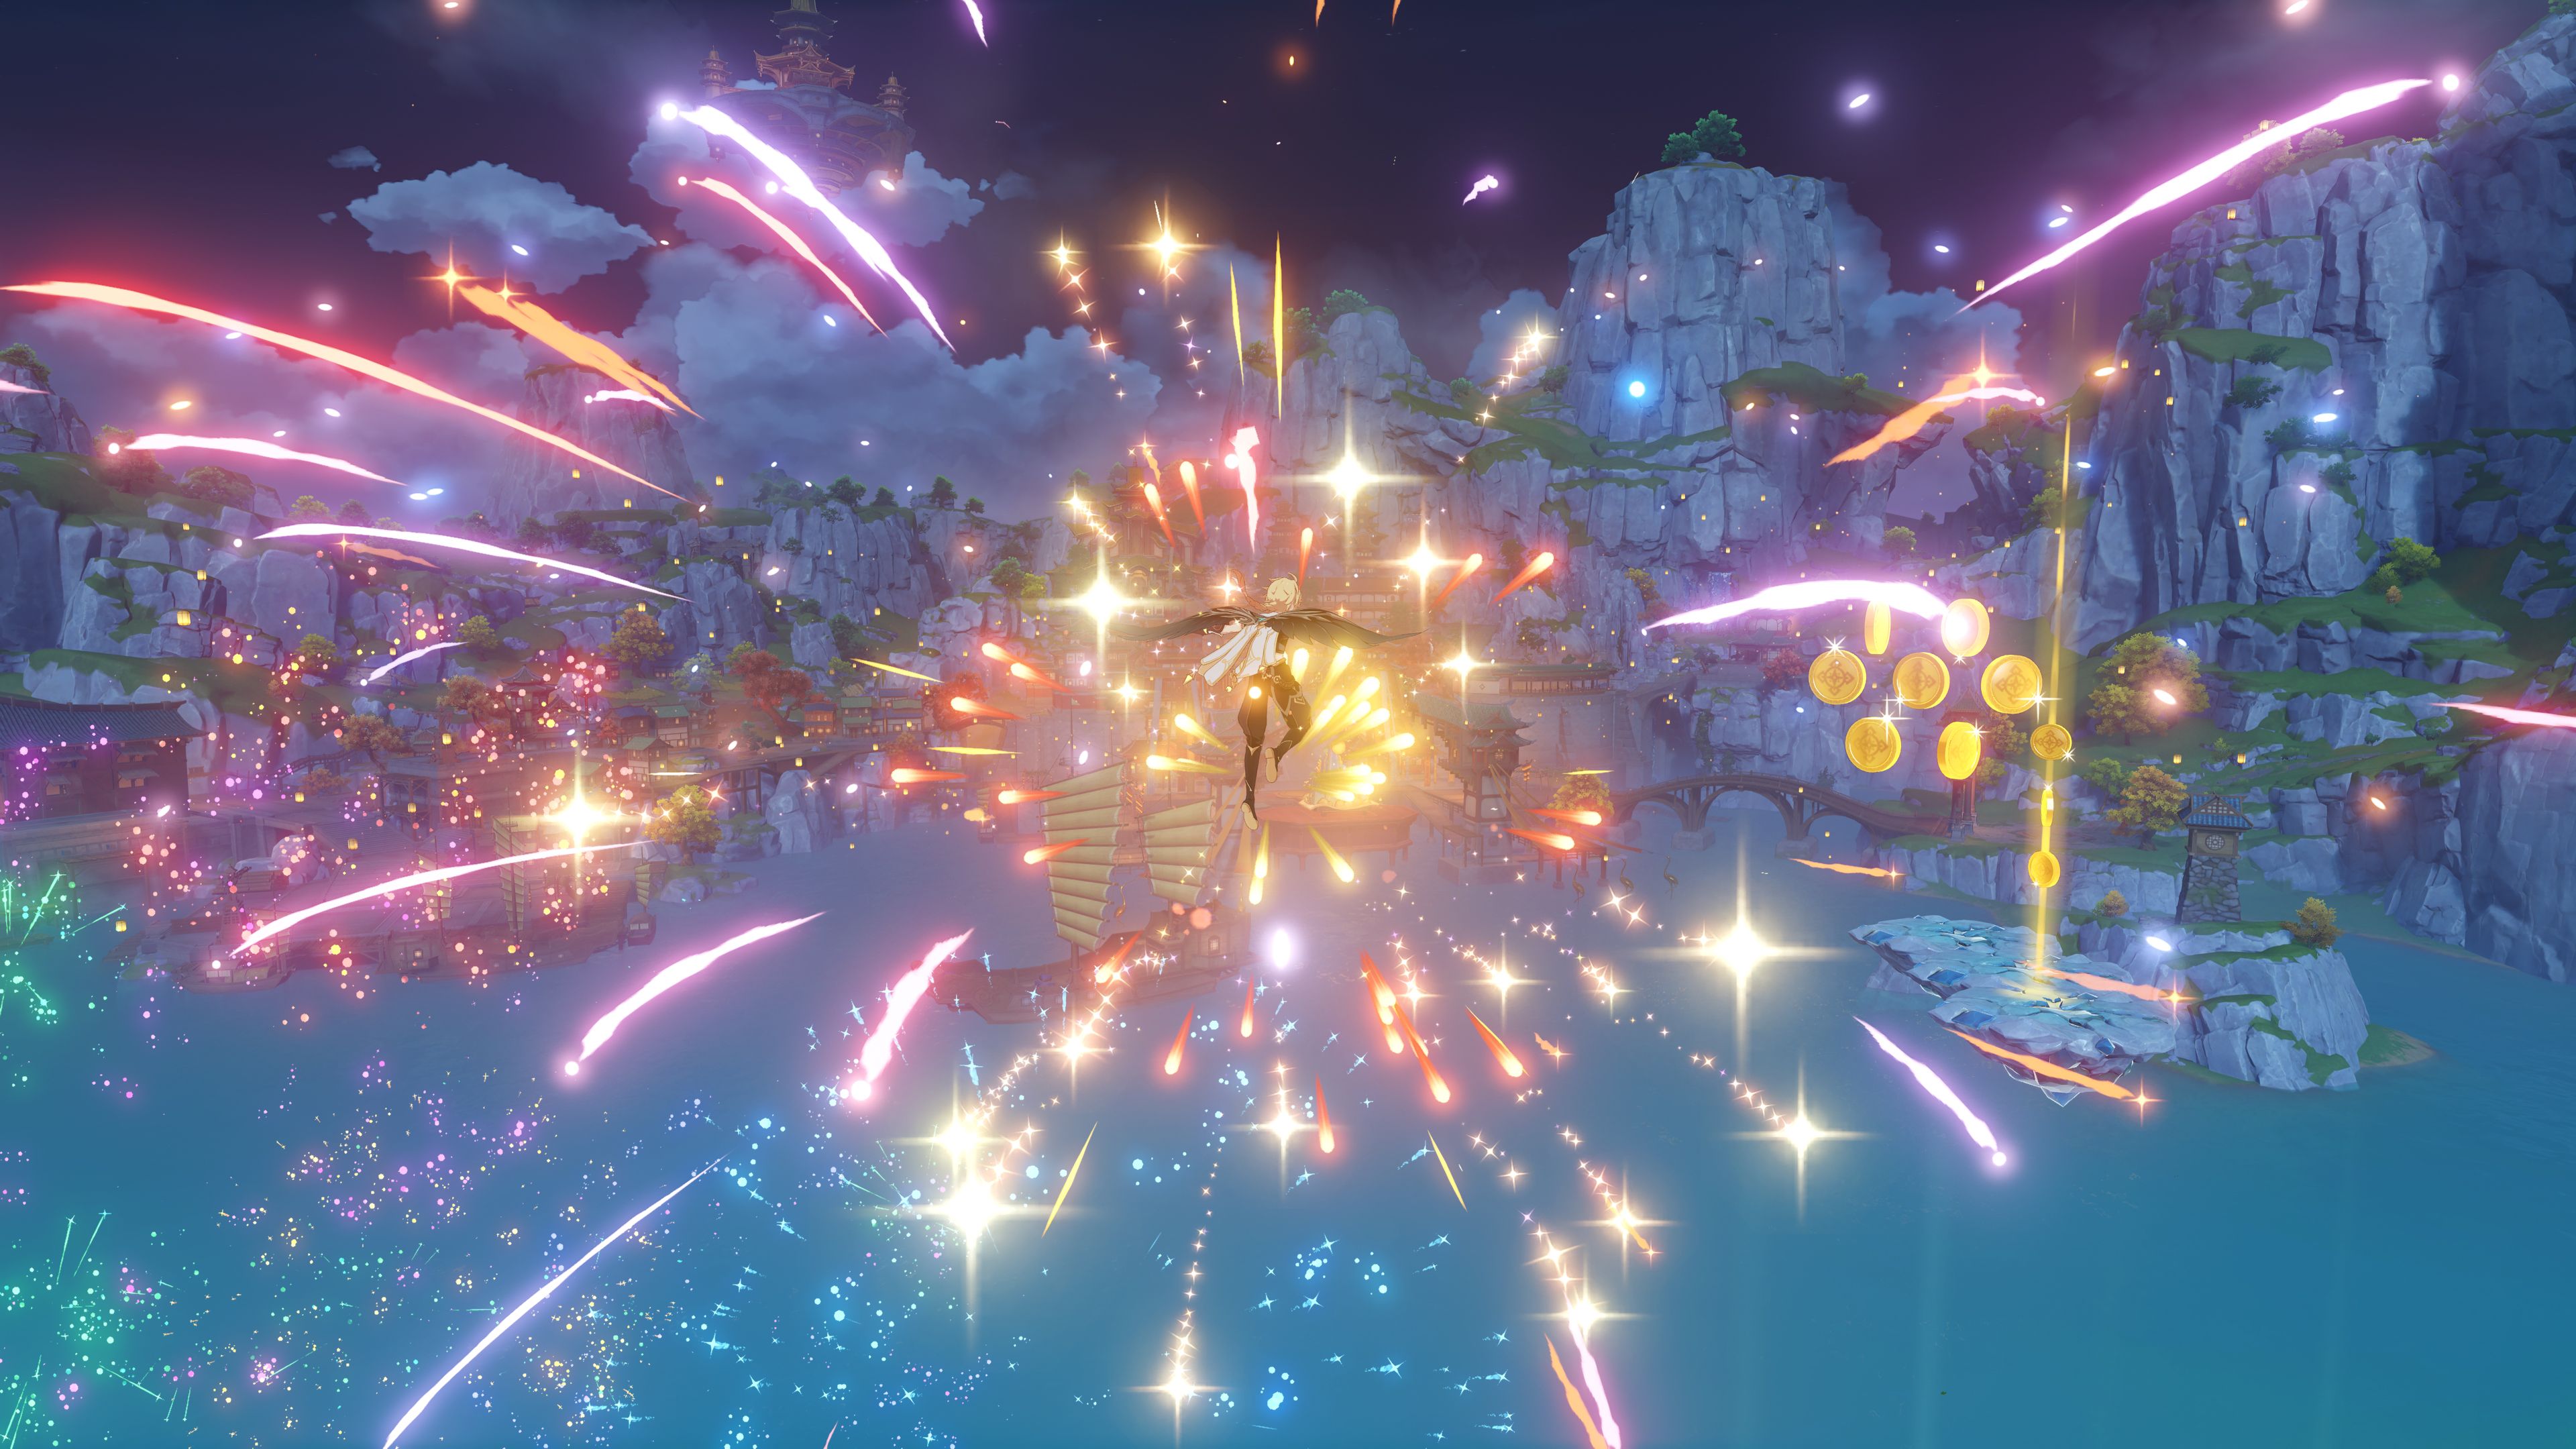 O viajante do Genshin Impact voando pelo céu no porto de Liyue enquanto fogos de artifício explodem ao seu redor no minijogo Radiant Sparks.